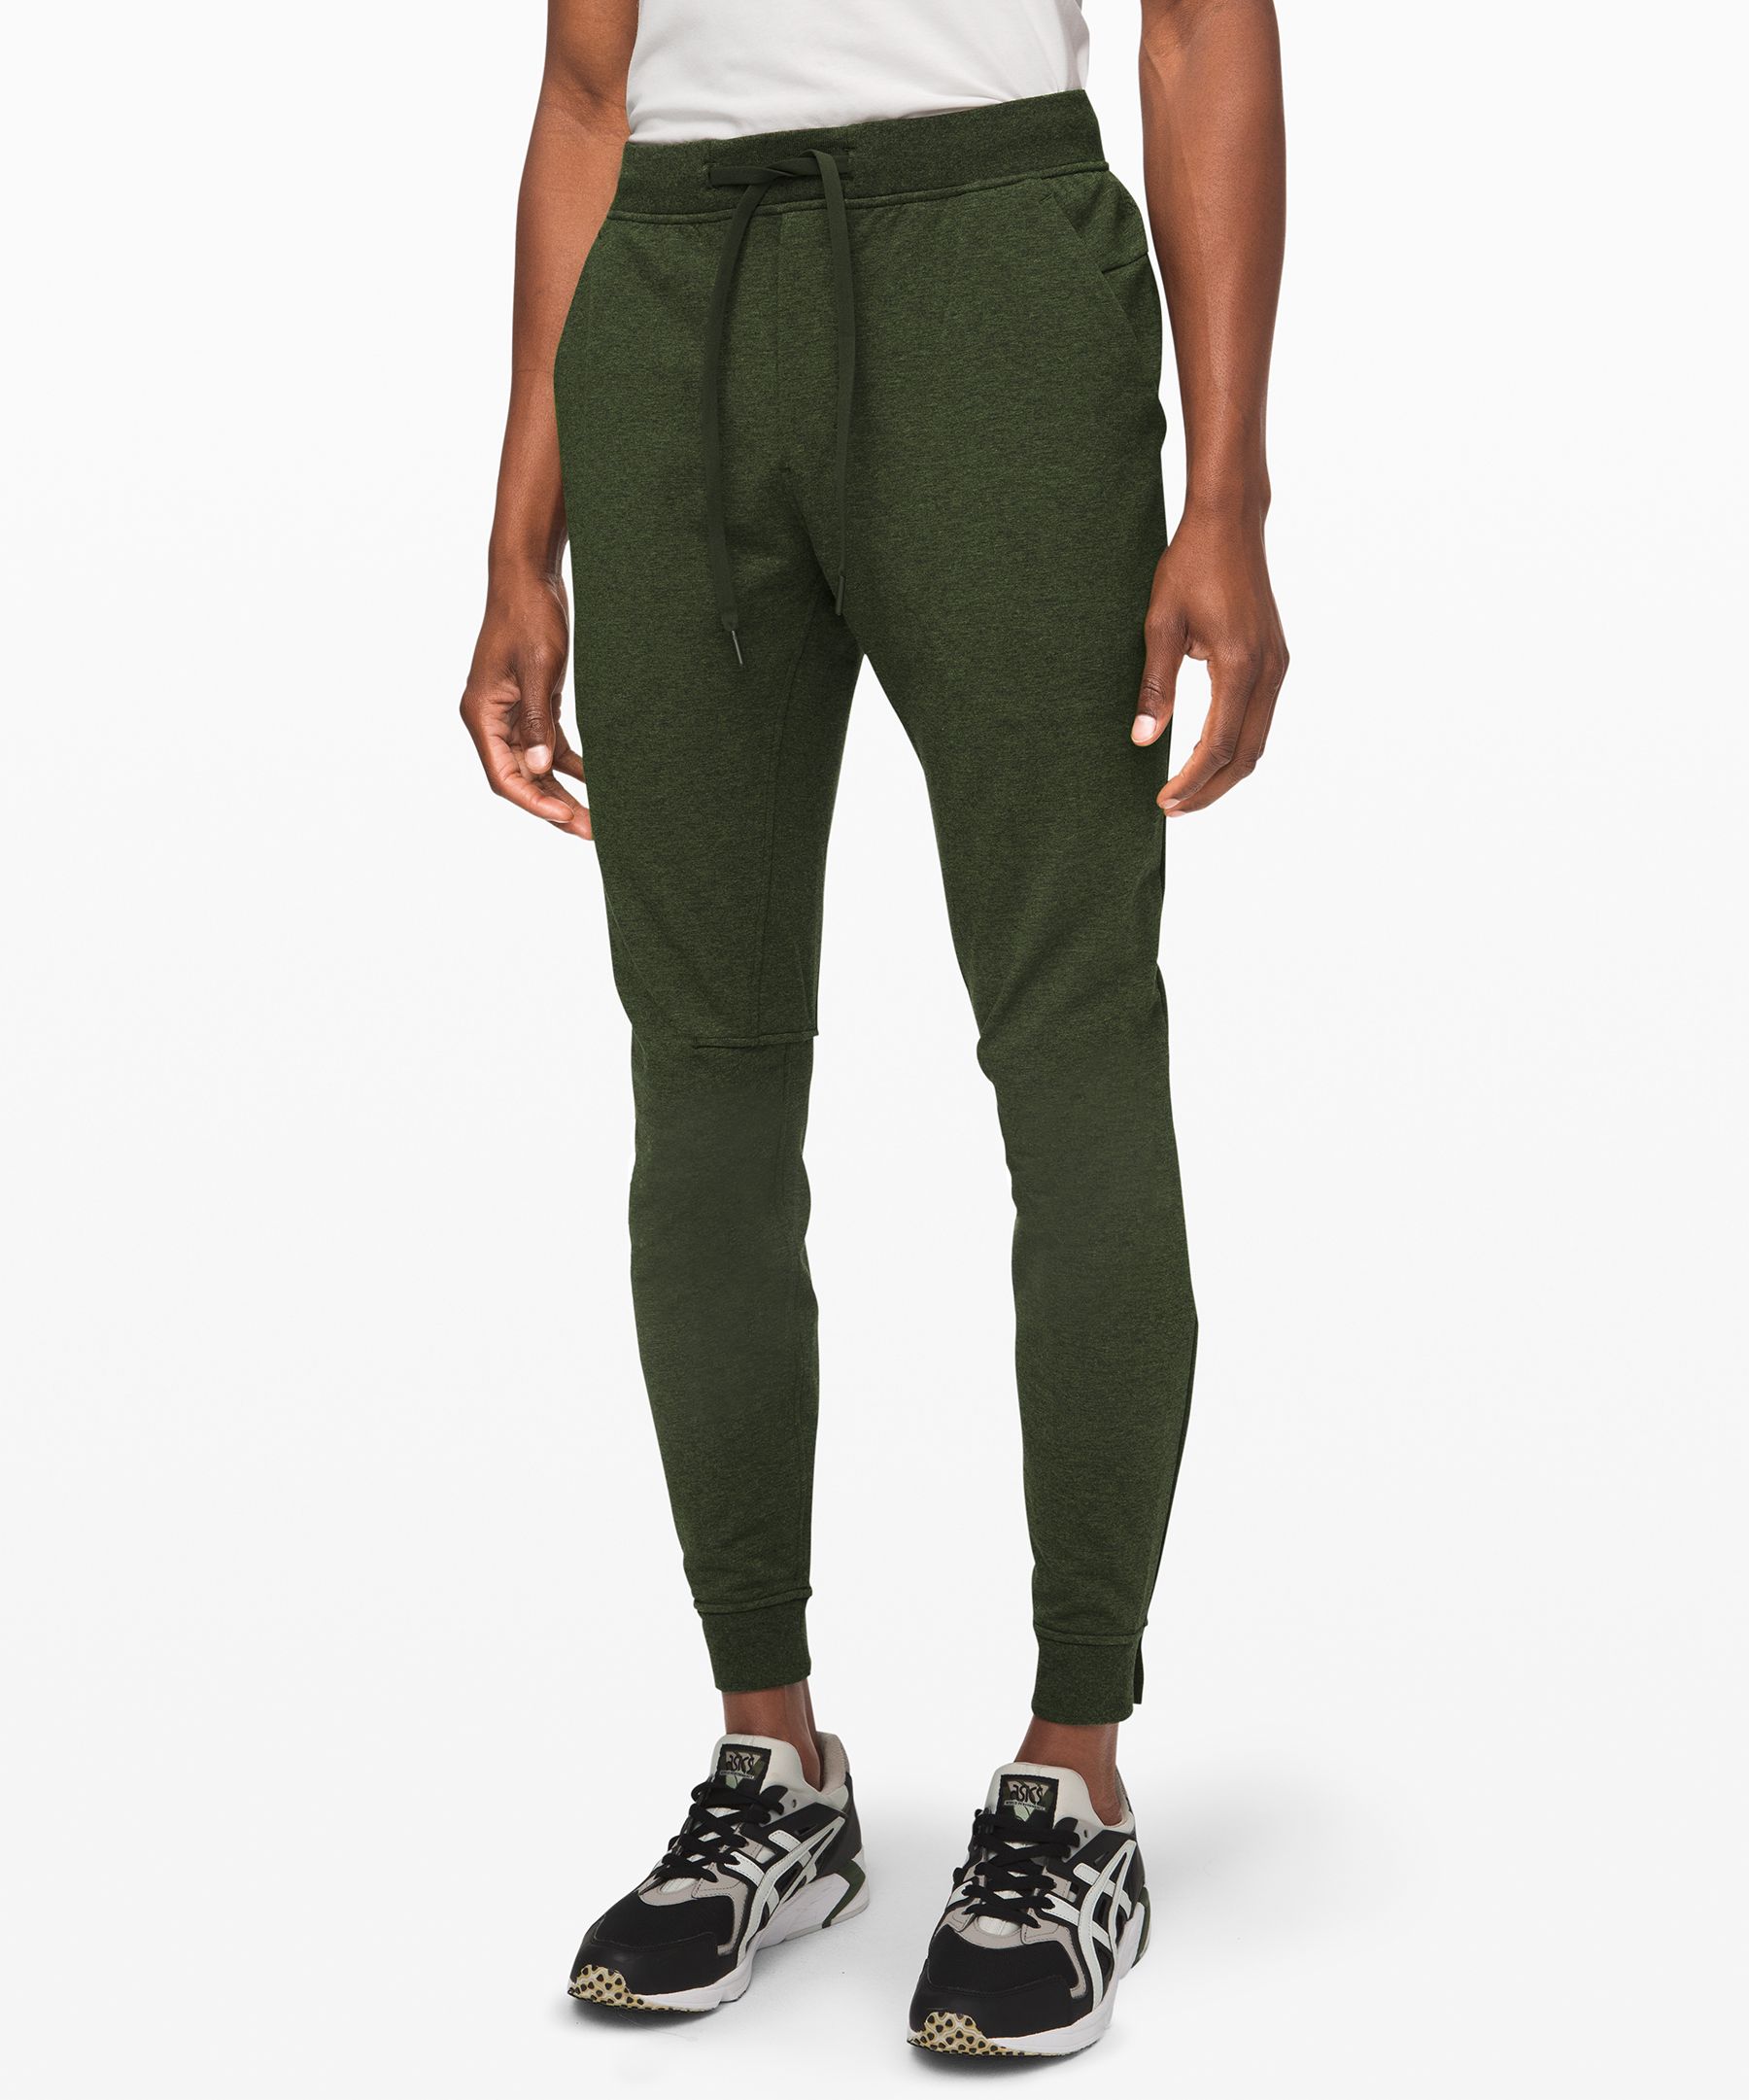  CRZ YOGA Men's Joggers Sweatpants - 29'' Cotton Casual